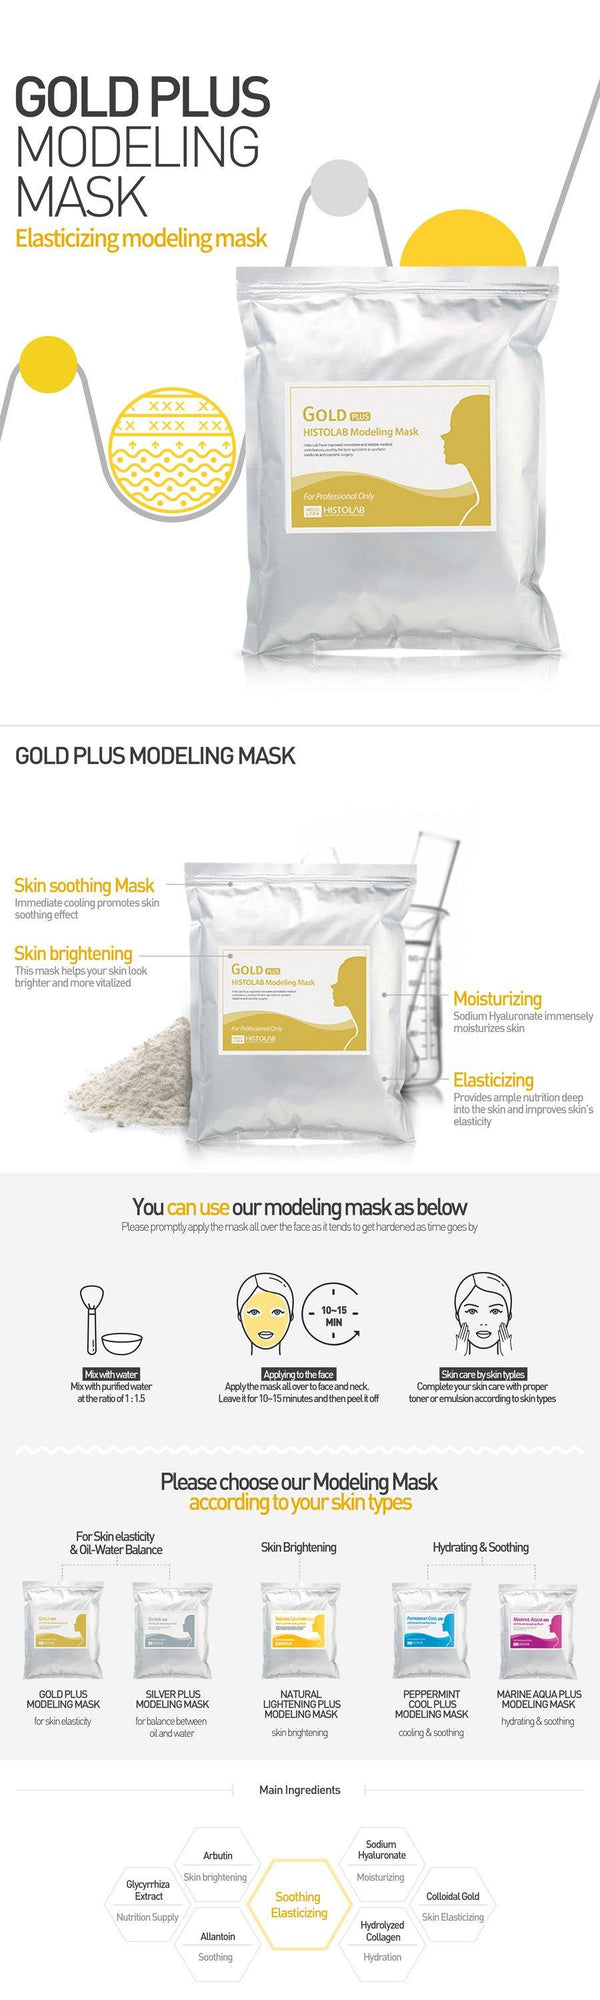 Gold Plus Modeling Mask - HistoLab Canada